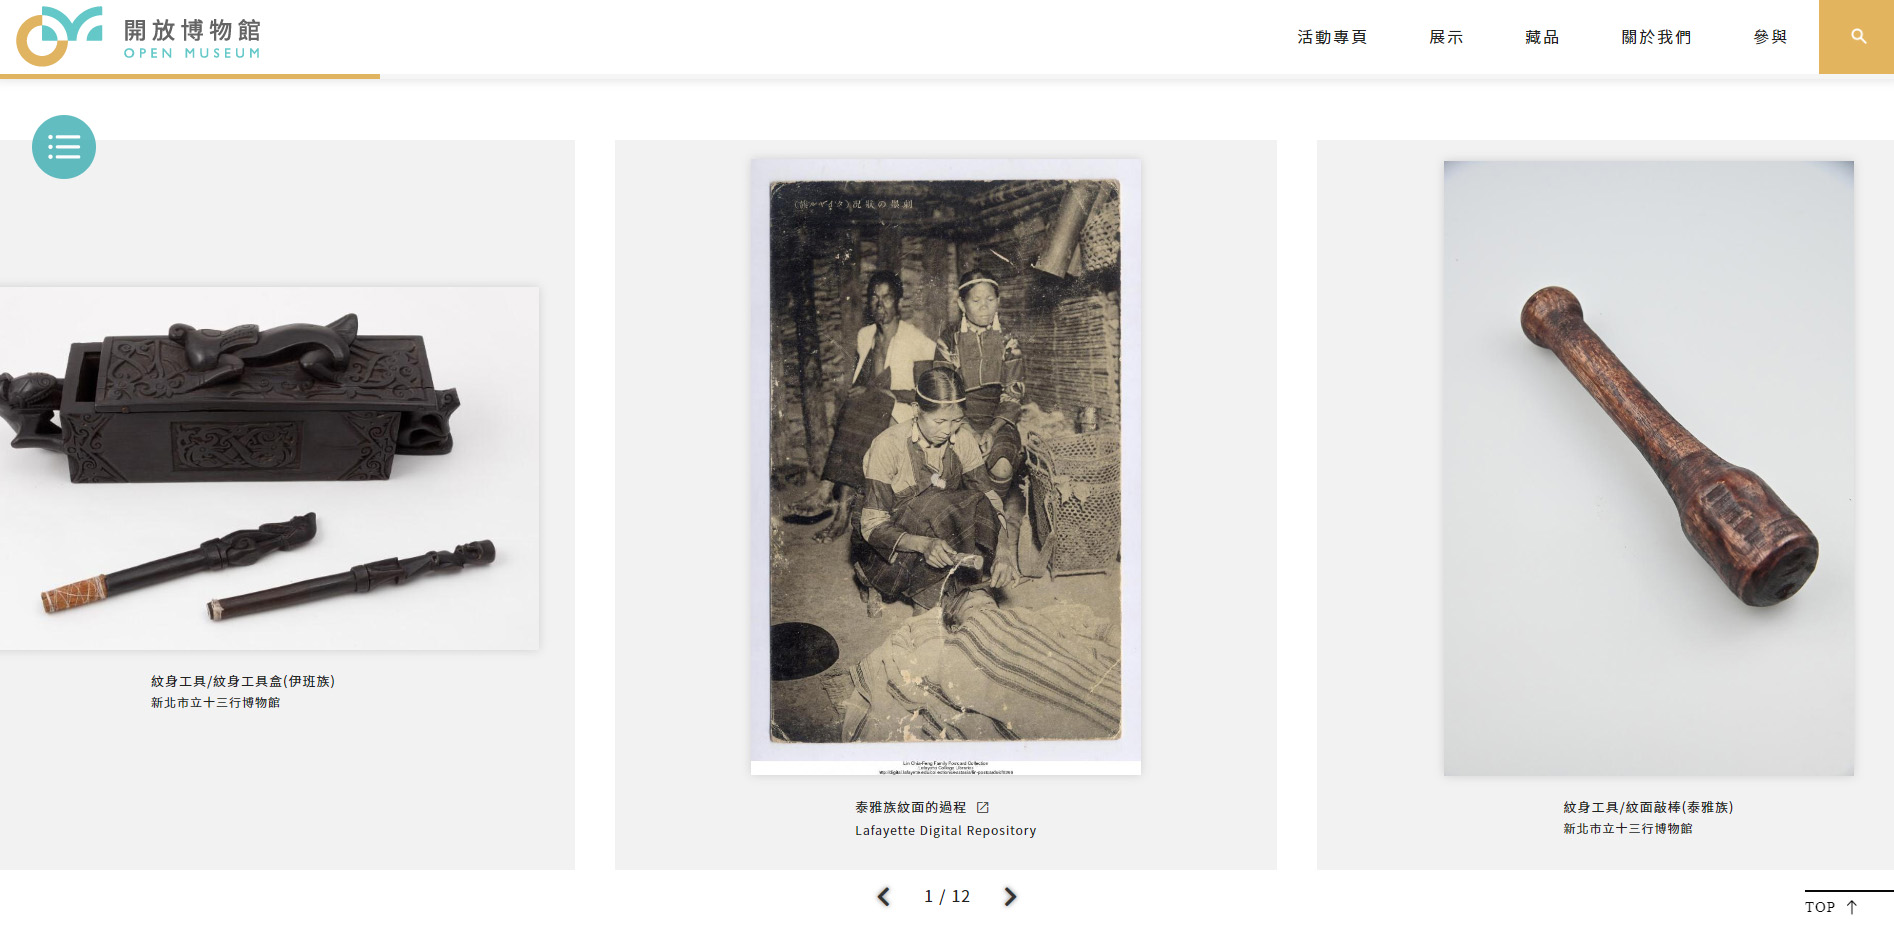 「開放博物館」平台展出十三行典藏之南島語族紋身工具